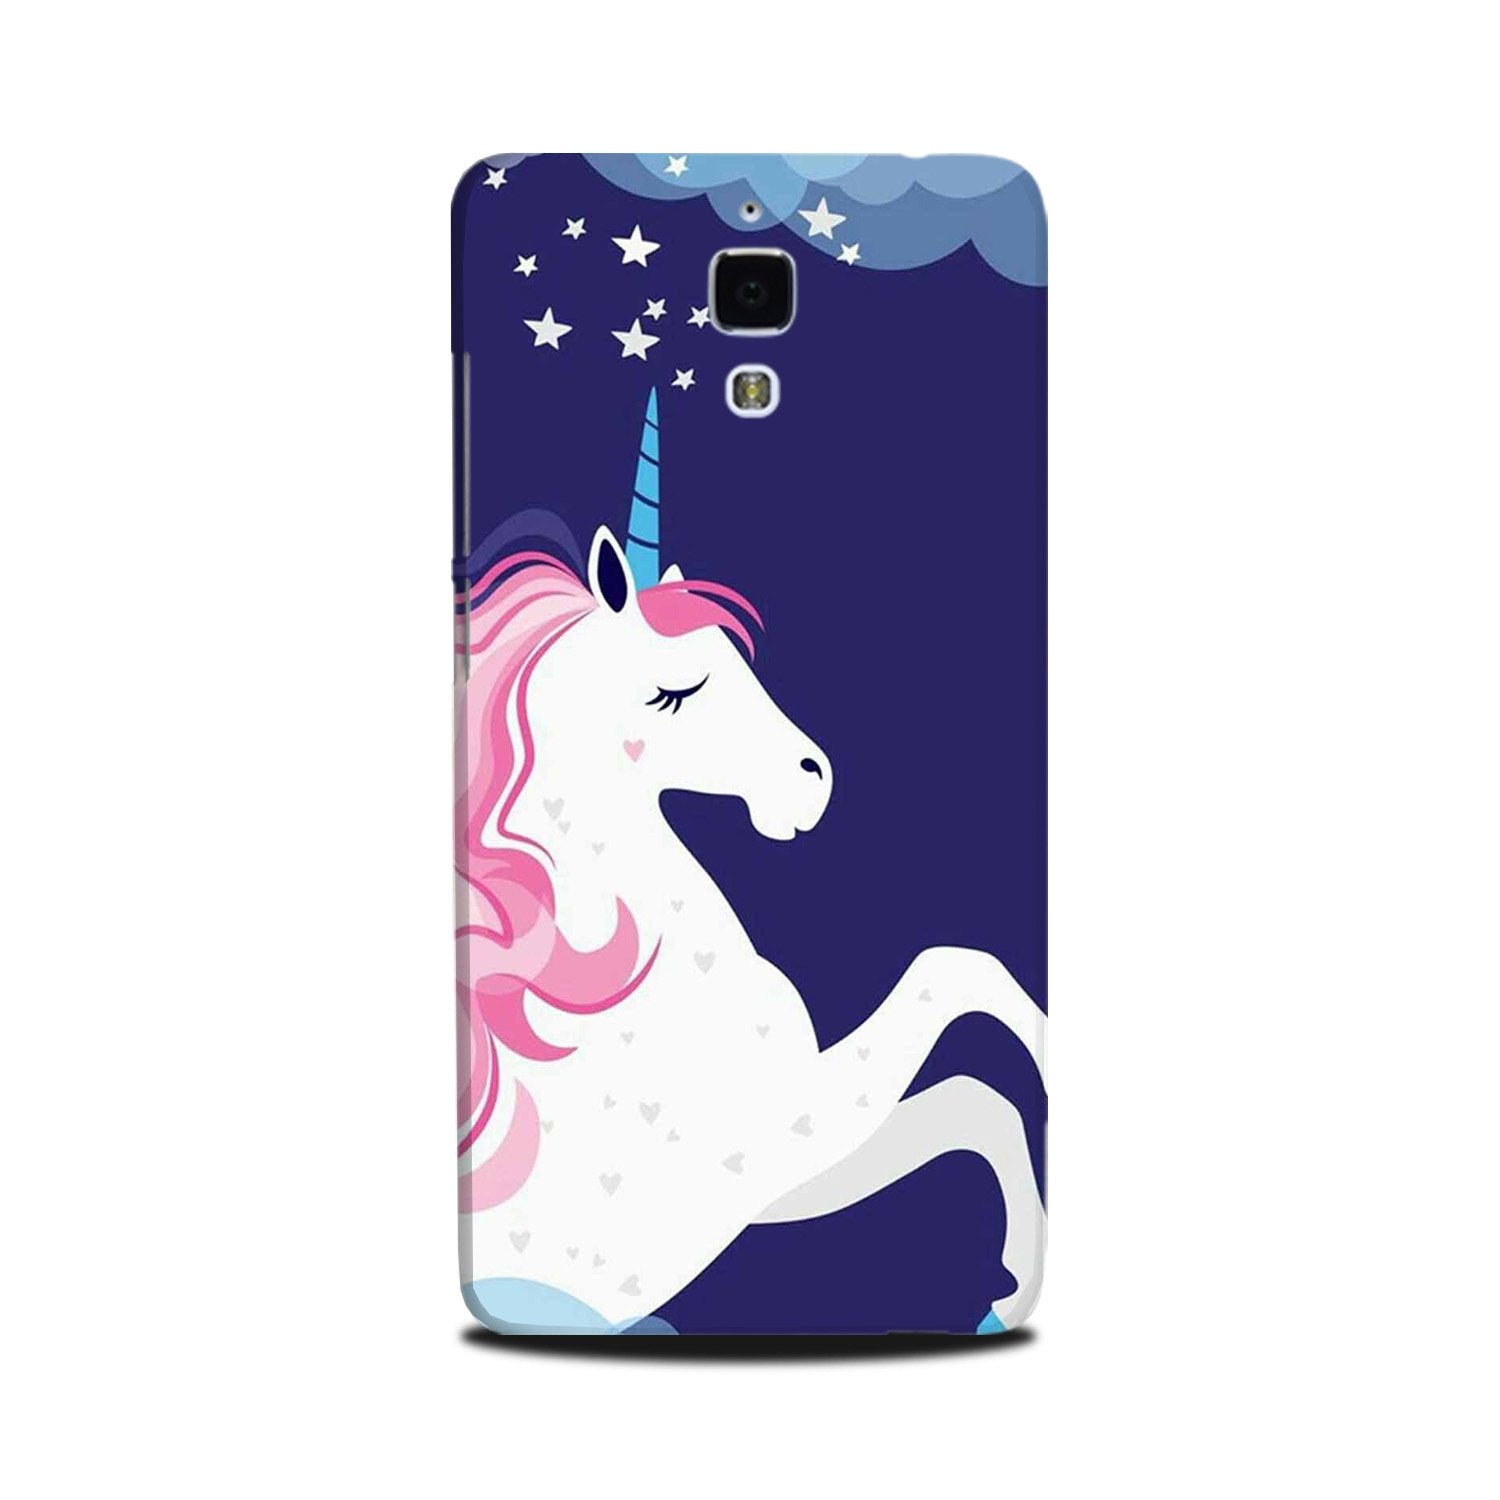 Unicorn Mobile Back Case for Mi 4(Design - 365)